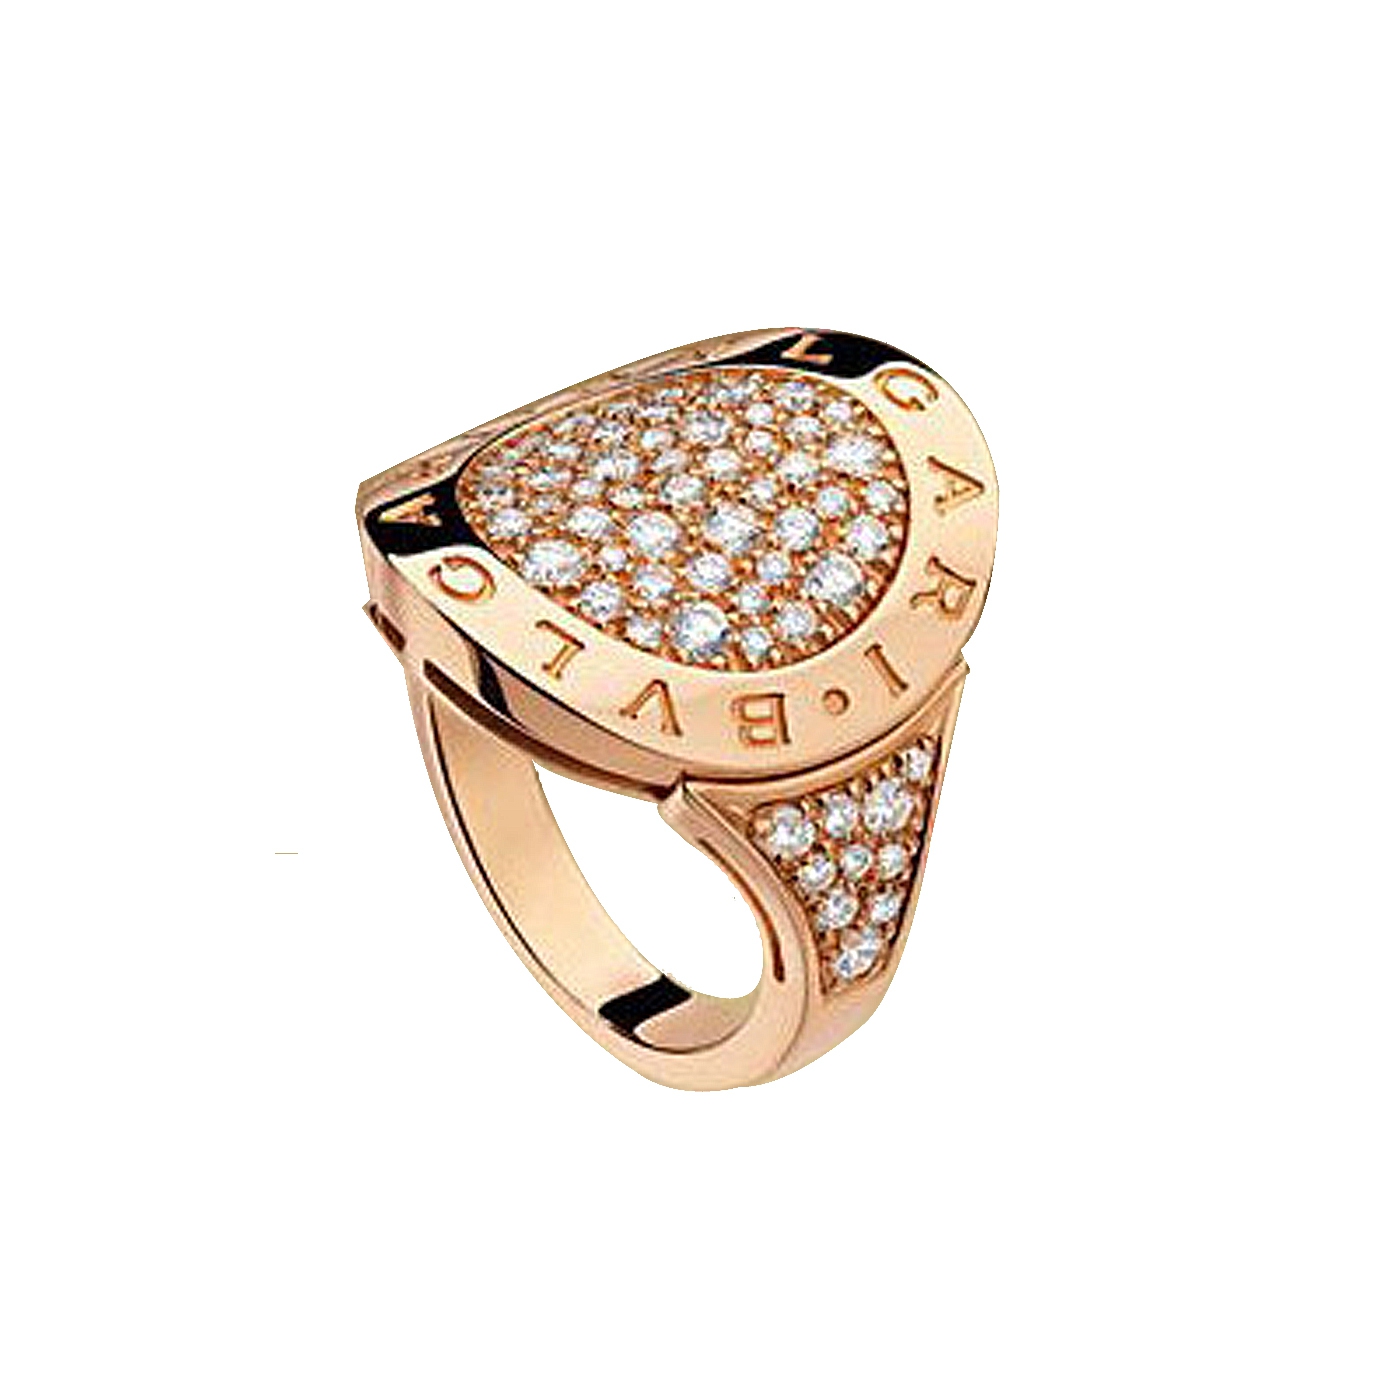 Bvlgari Bvlgari 18k Rose Gold Shield Design Ring with Full Pave